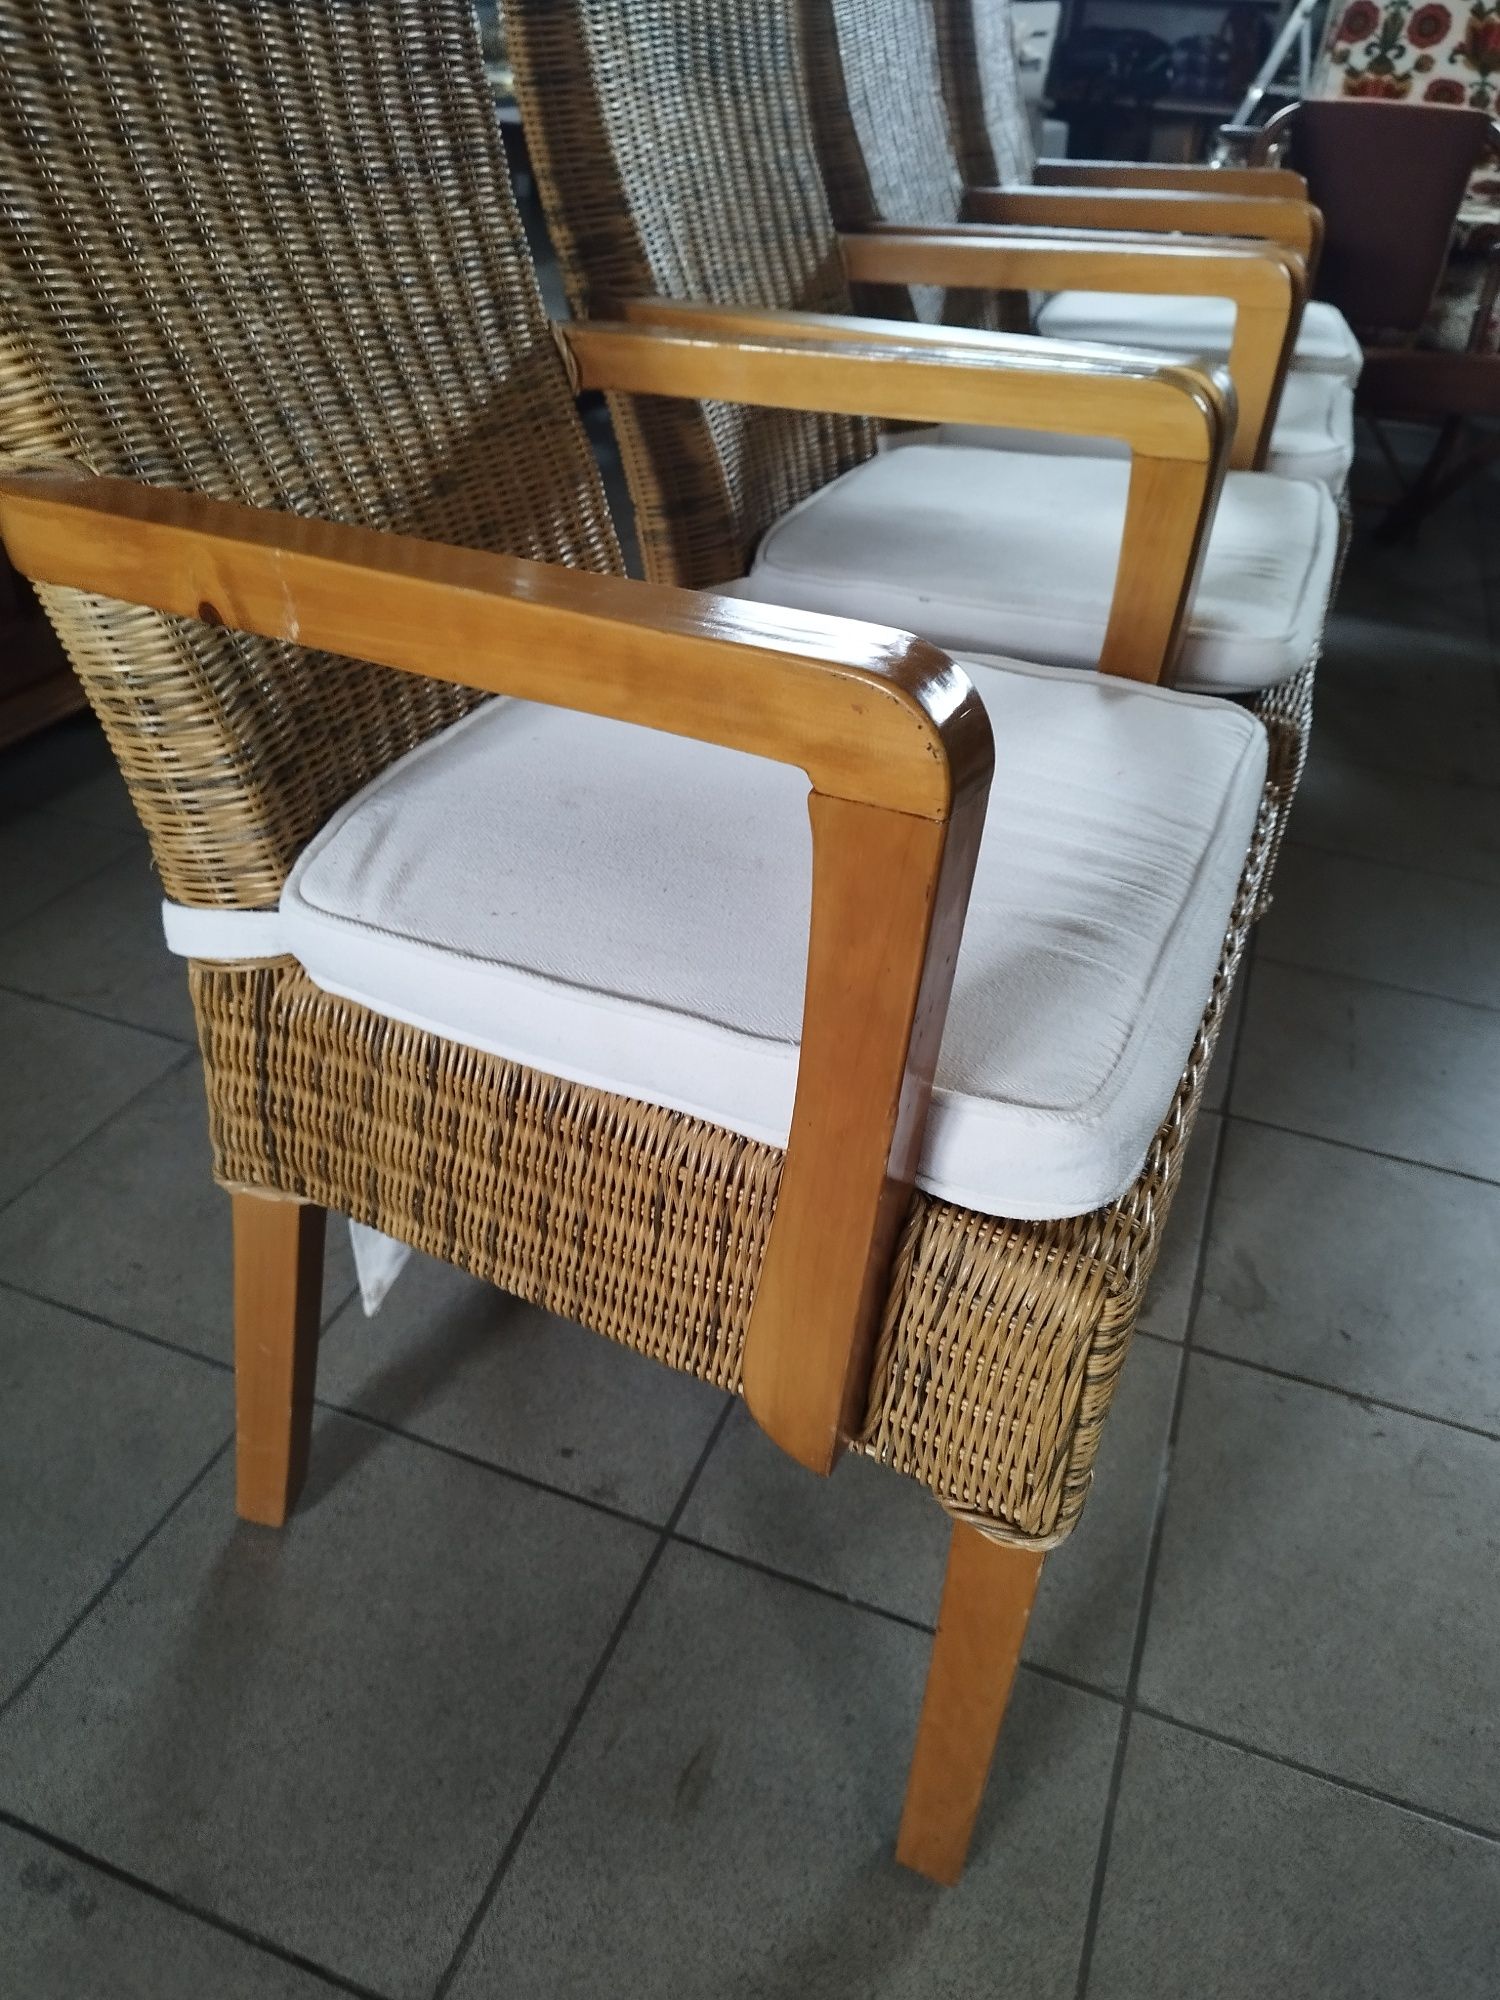 krzesła drewniano-wiklinowe kuchenne salonowe antyk